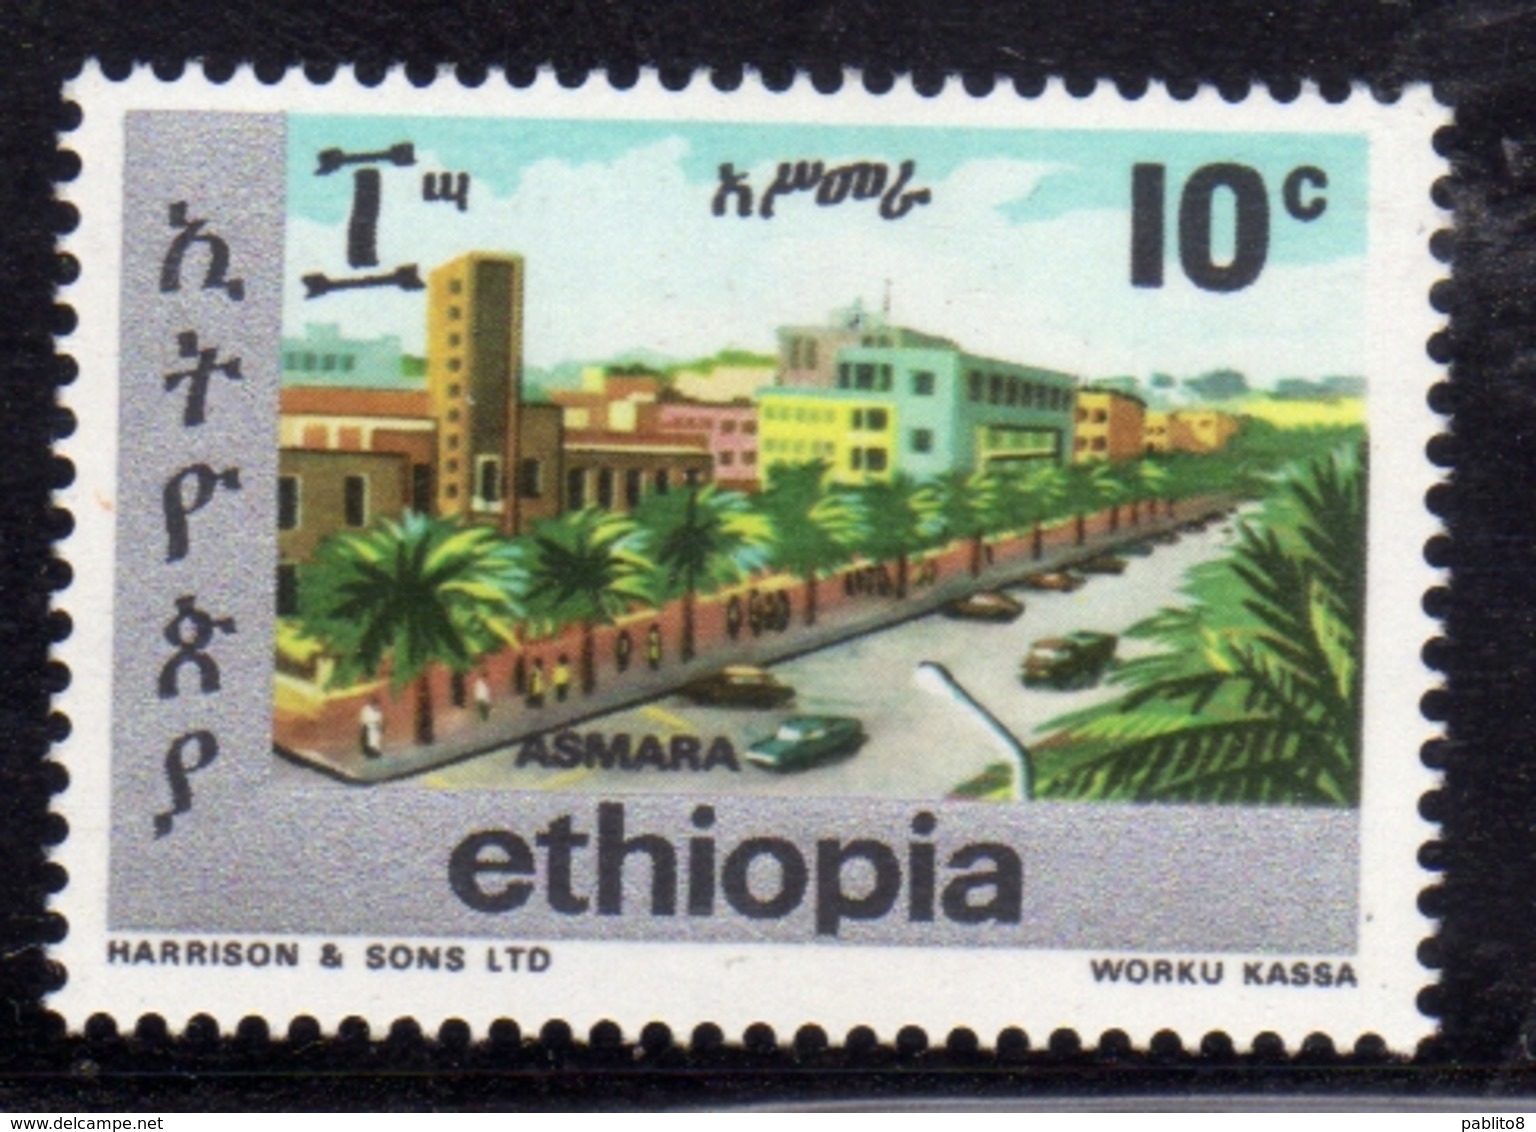 ETHIOPIA ETIOPIA ETHIOPIE 1977 TOWNS OF ADDIS ASMARA CENT. 10c MNH - Äthiopien